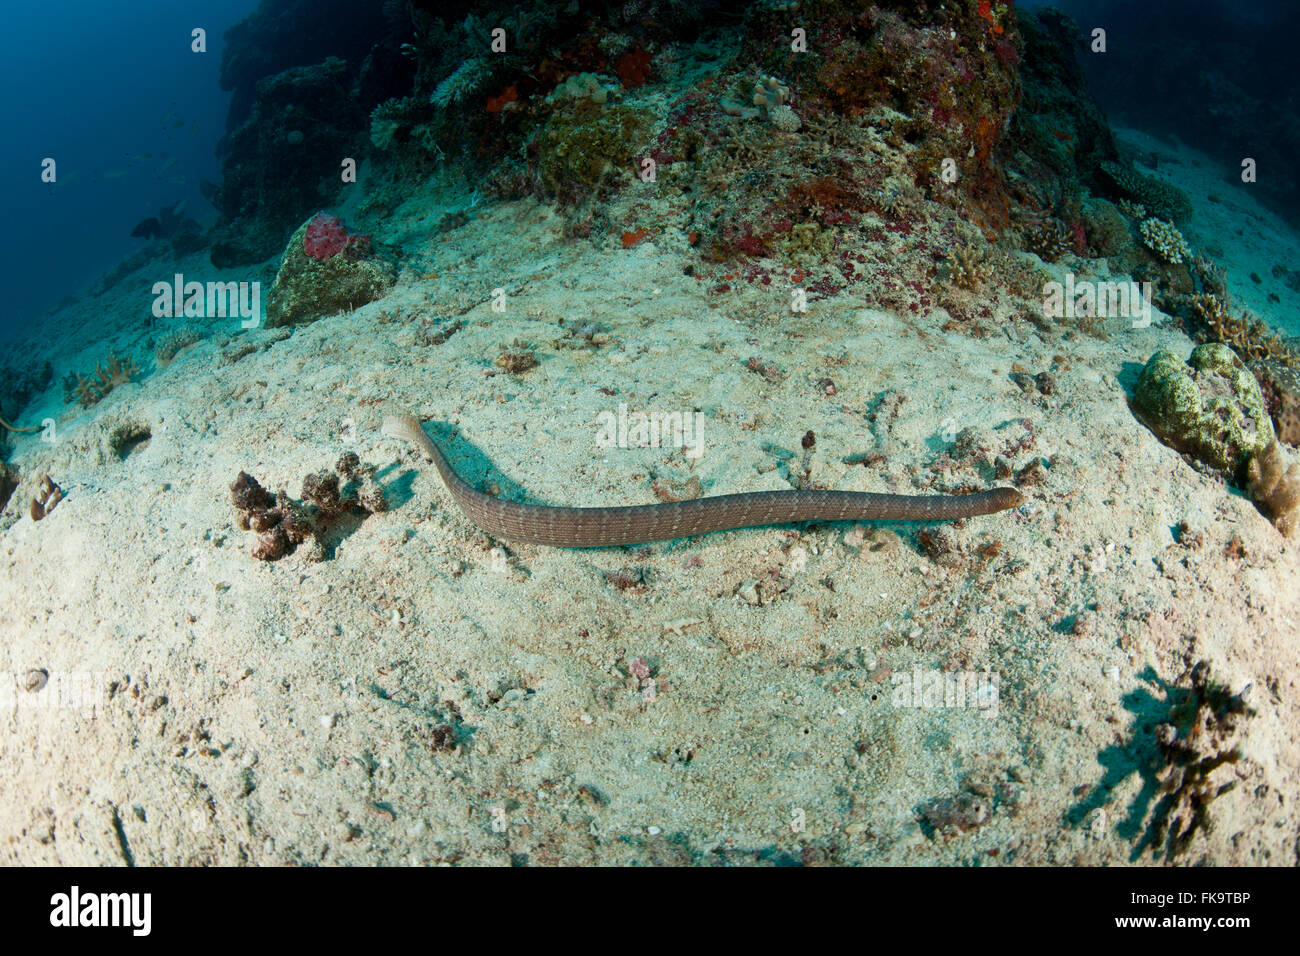 Serpent de mer, d'olive (Aipysurus laevis) espèces de serpents de mer venimeux trouvés dans l'Indo-Pacifique Banque D'Images